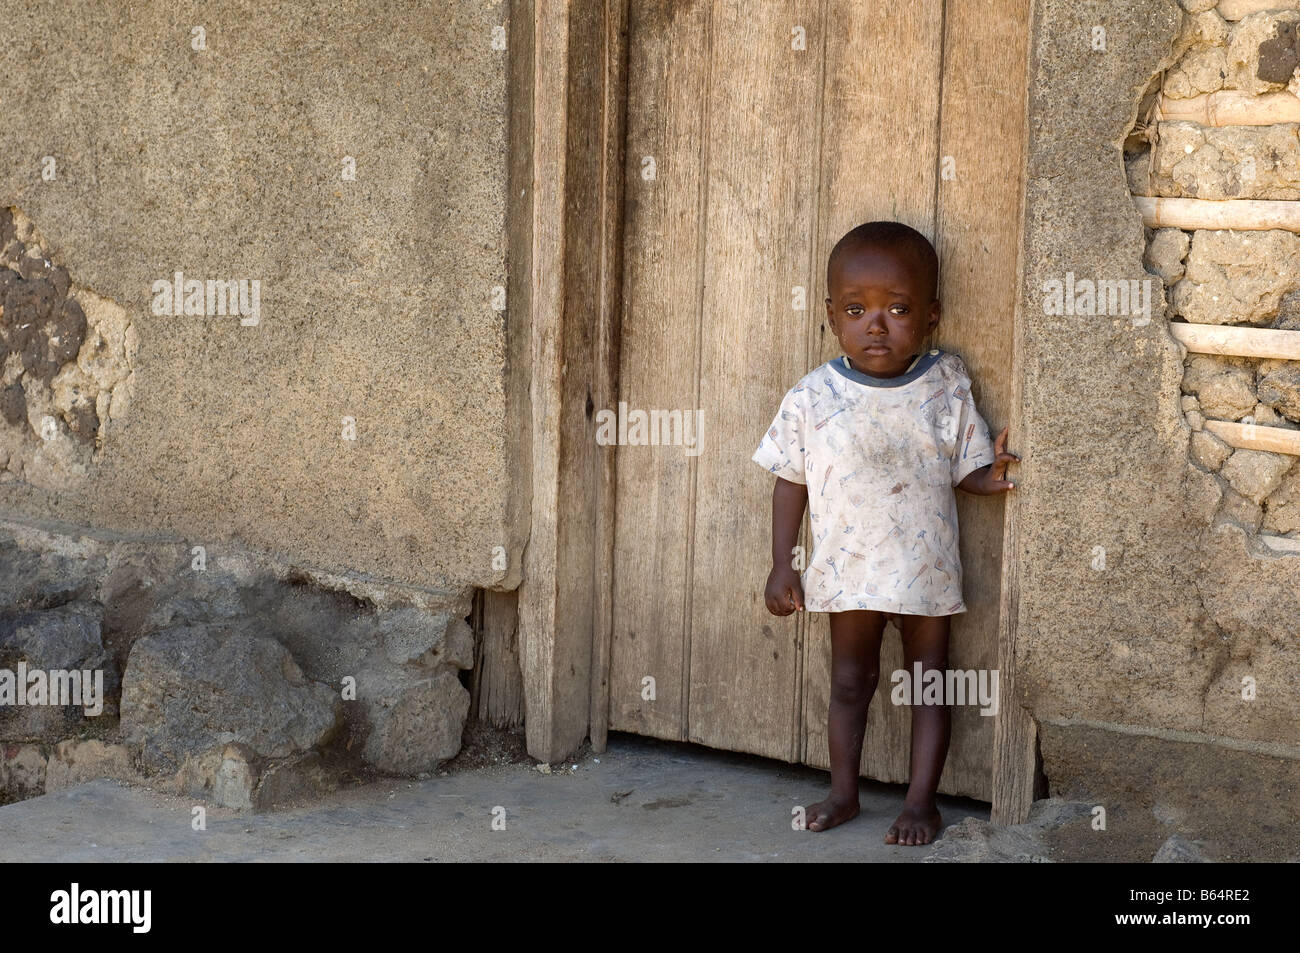 Traumatised Child, Kiwange, Congo Stock Photo